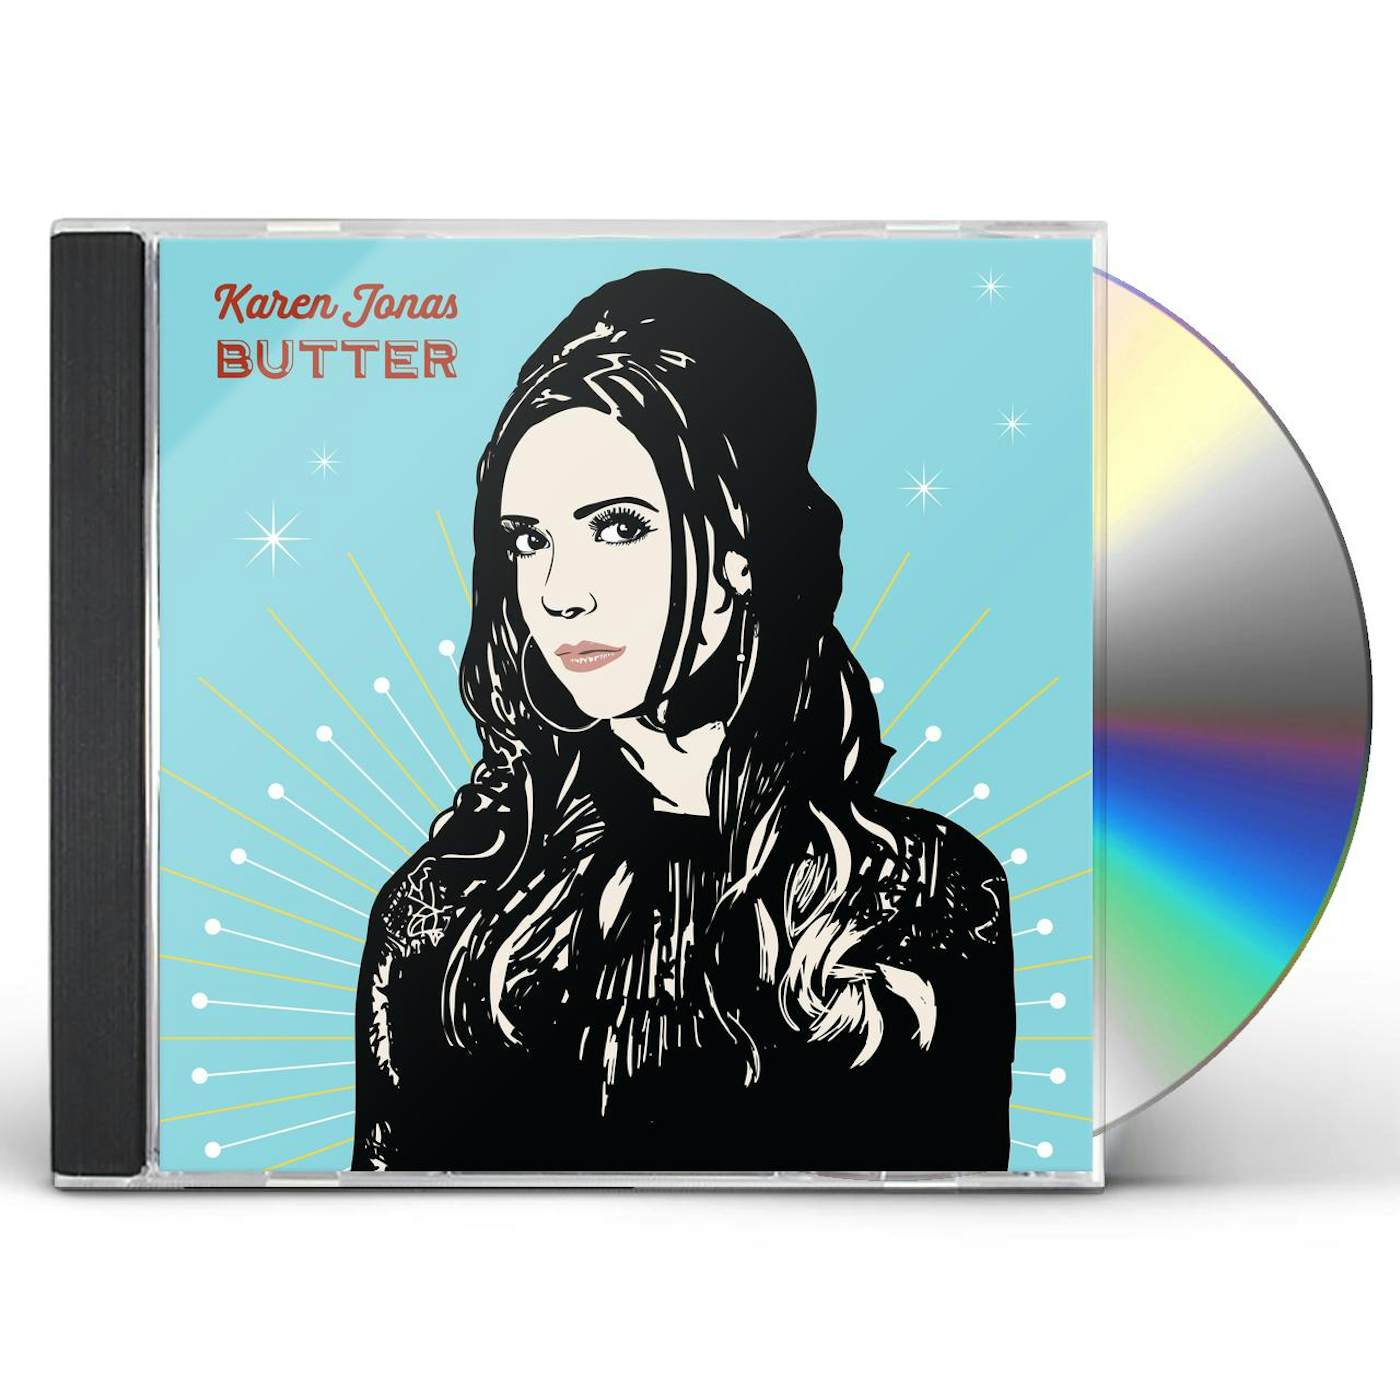 Karen Jonas BUTTER CD